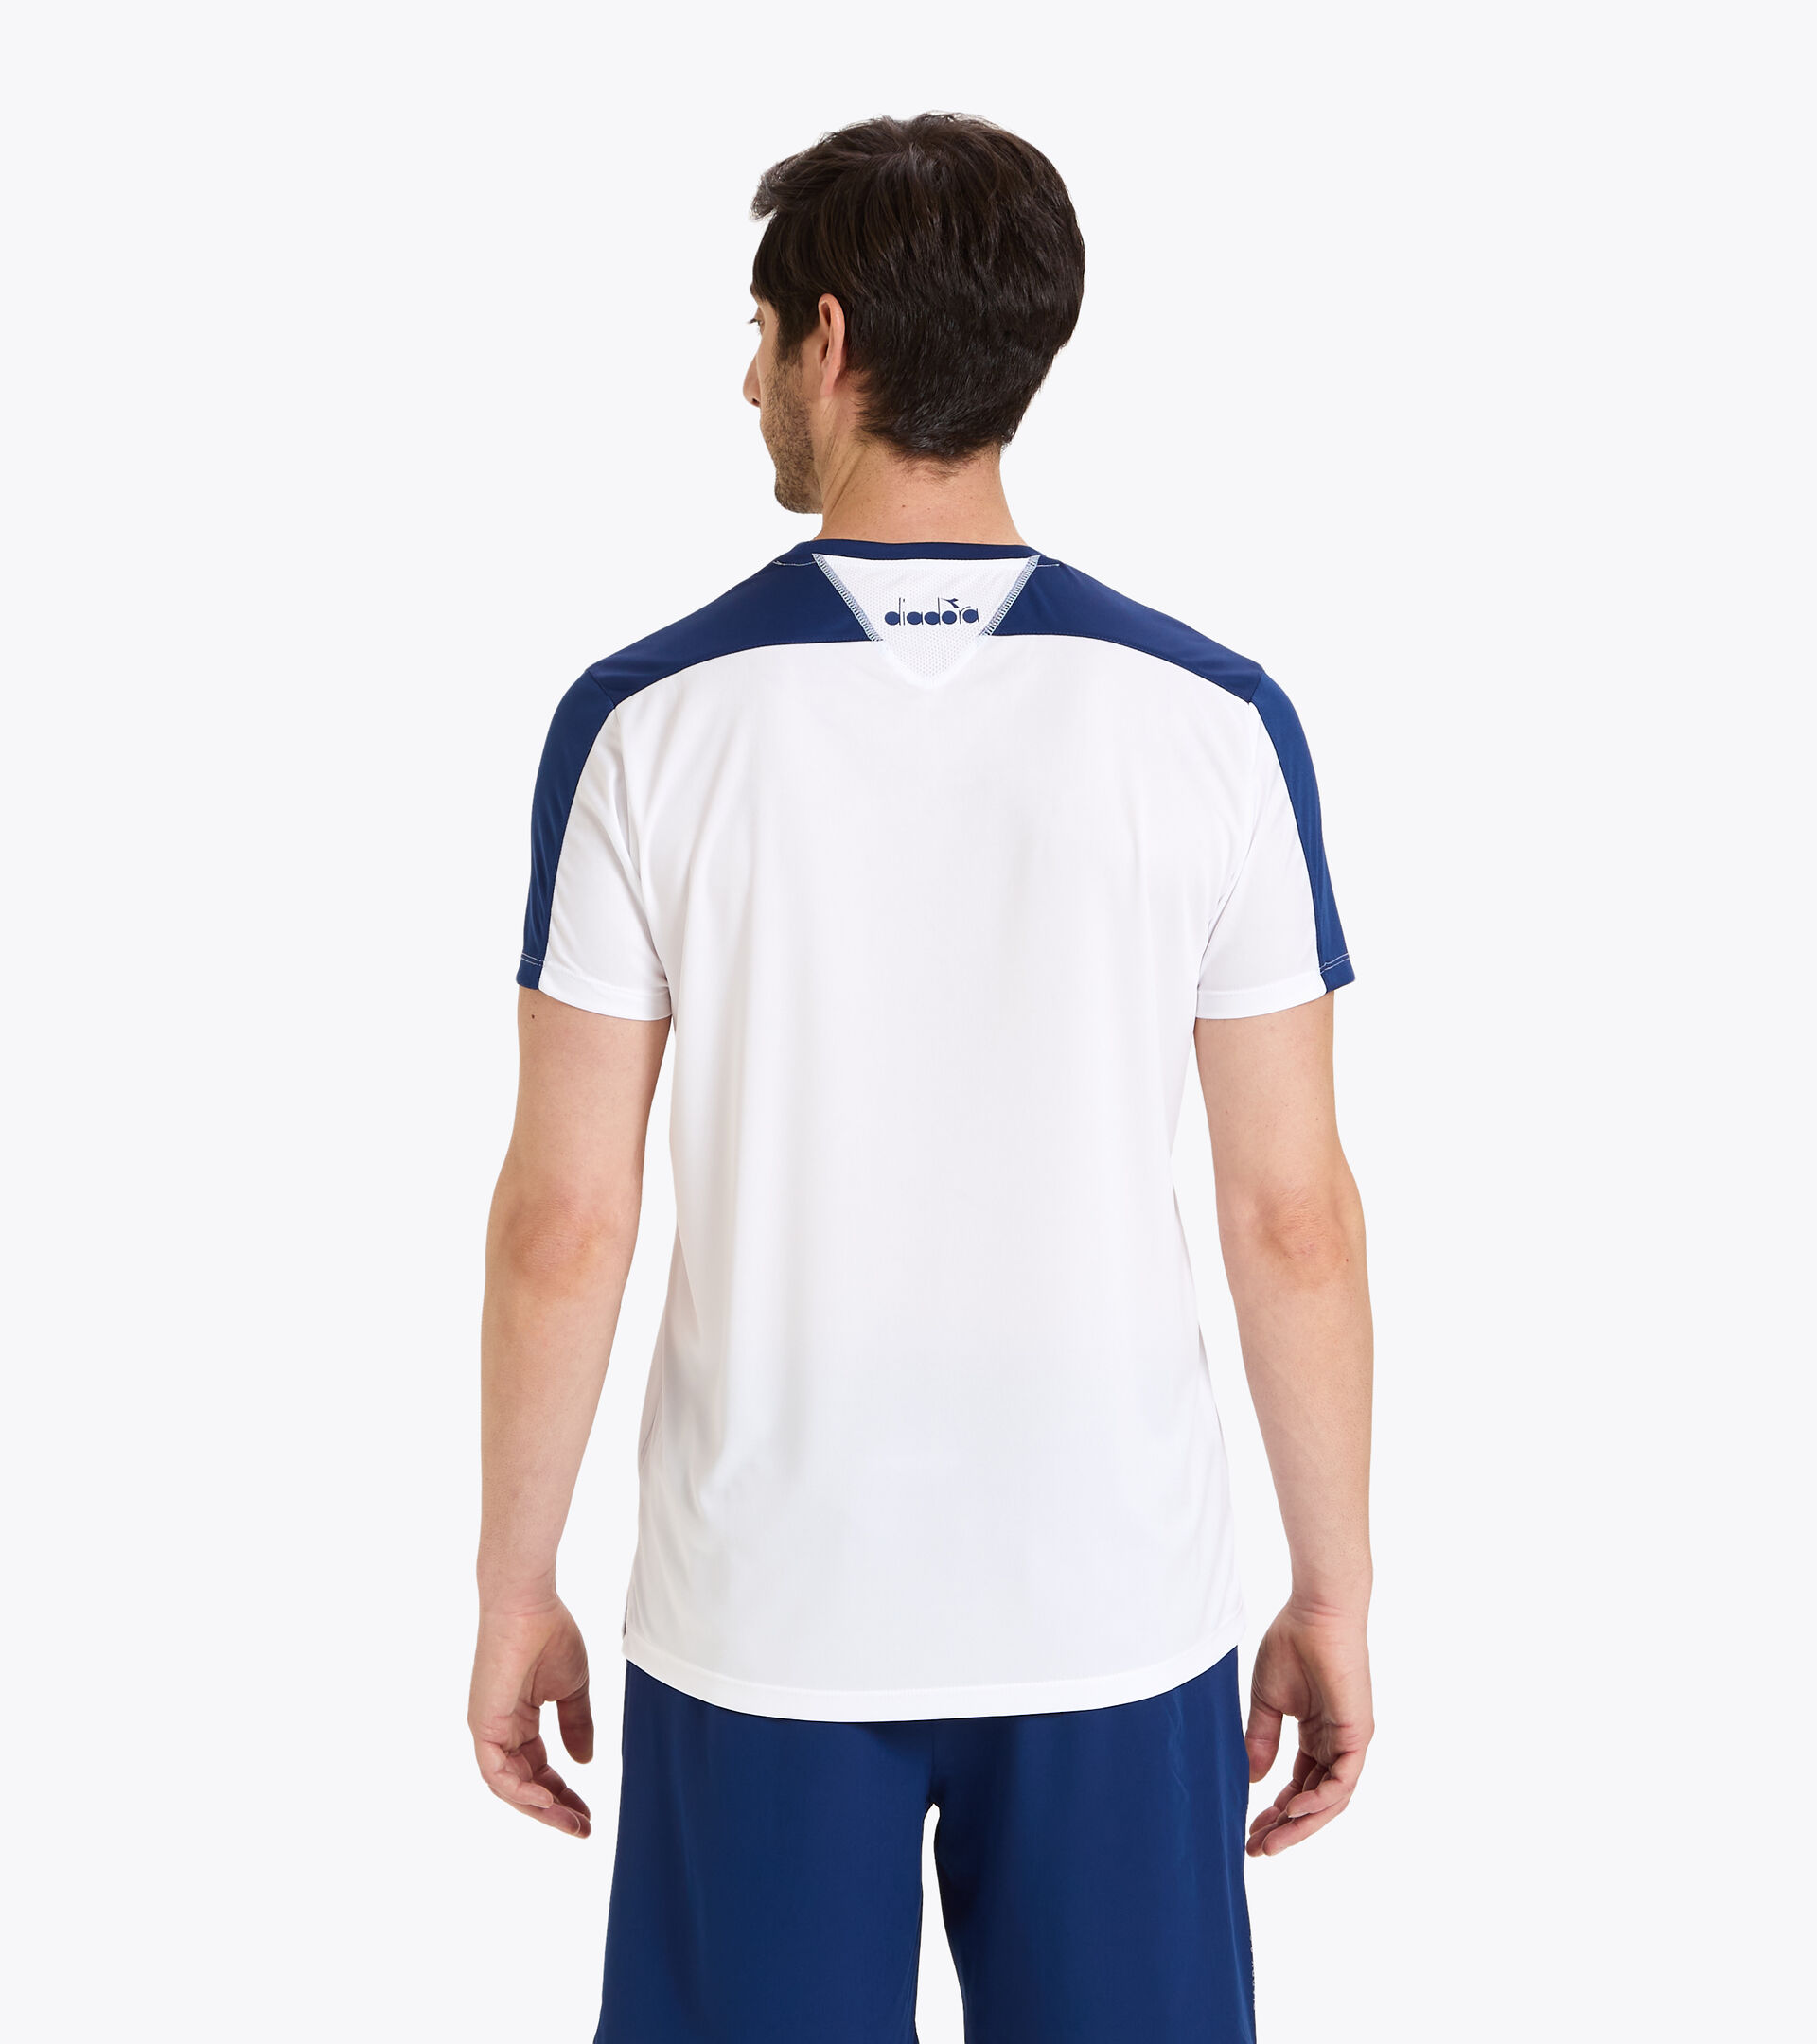 Tennis-T-Shirt - Herren T-SHIRT TEAM GUTBLAU - Diadora